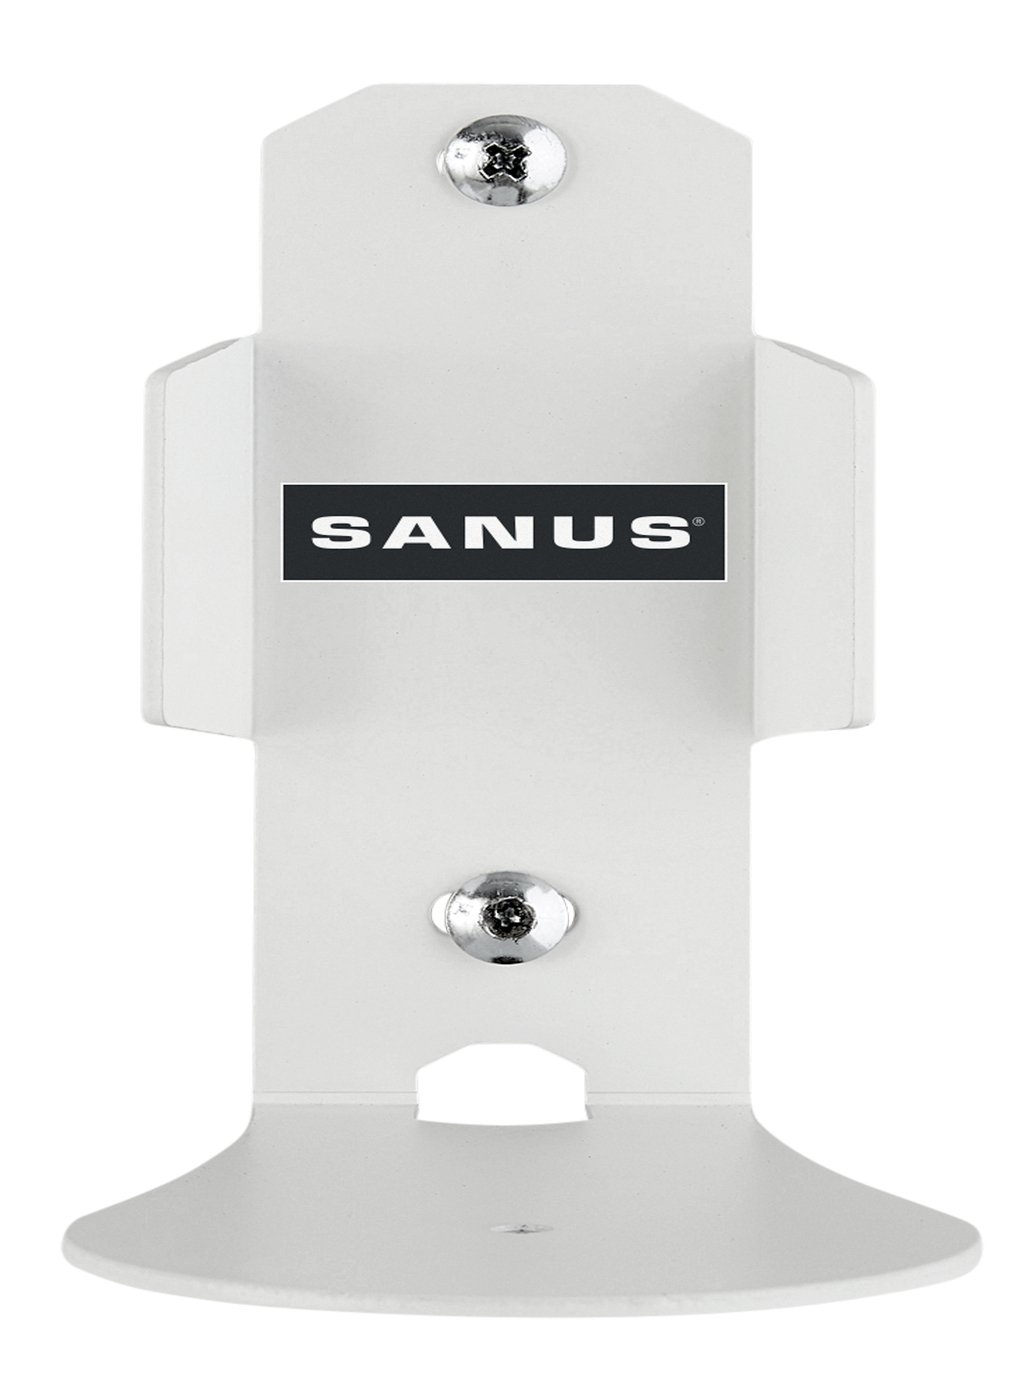 Sanus Echo / Echo Plus Single Wall Mount - White